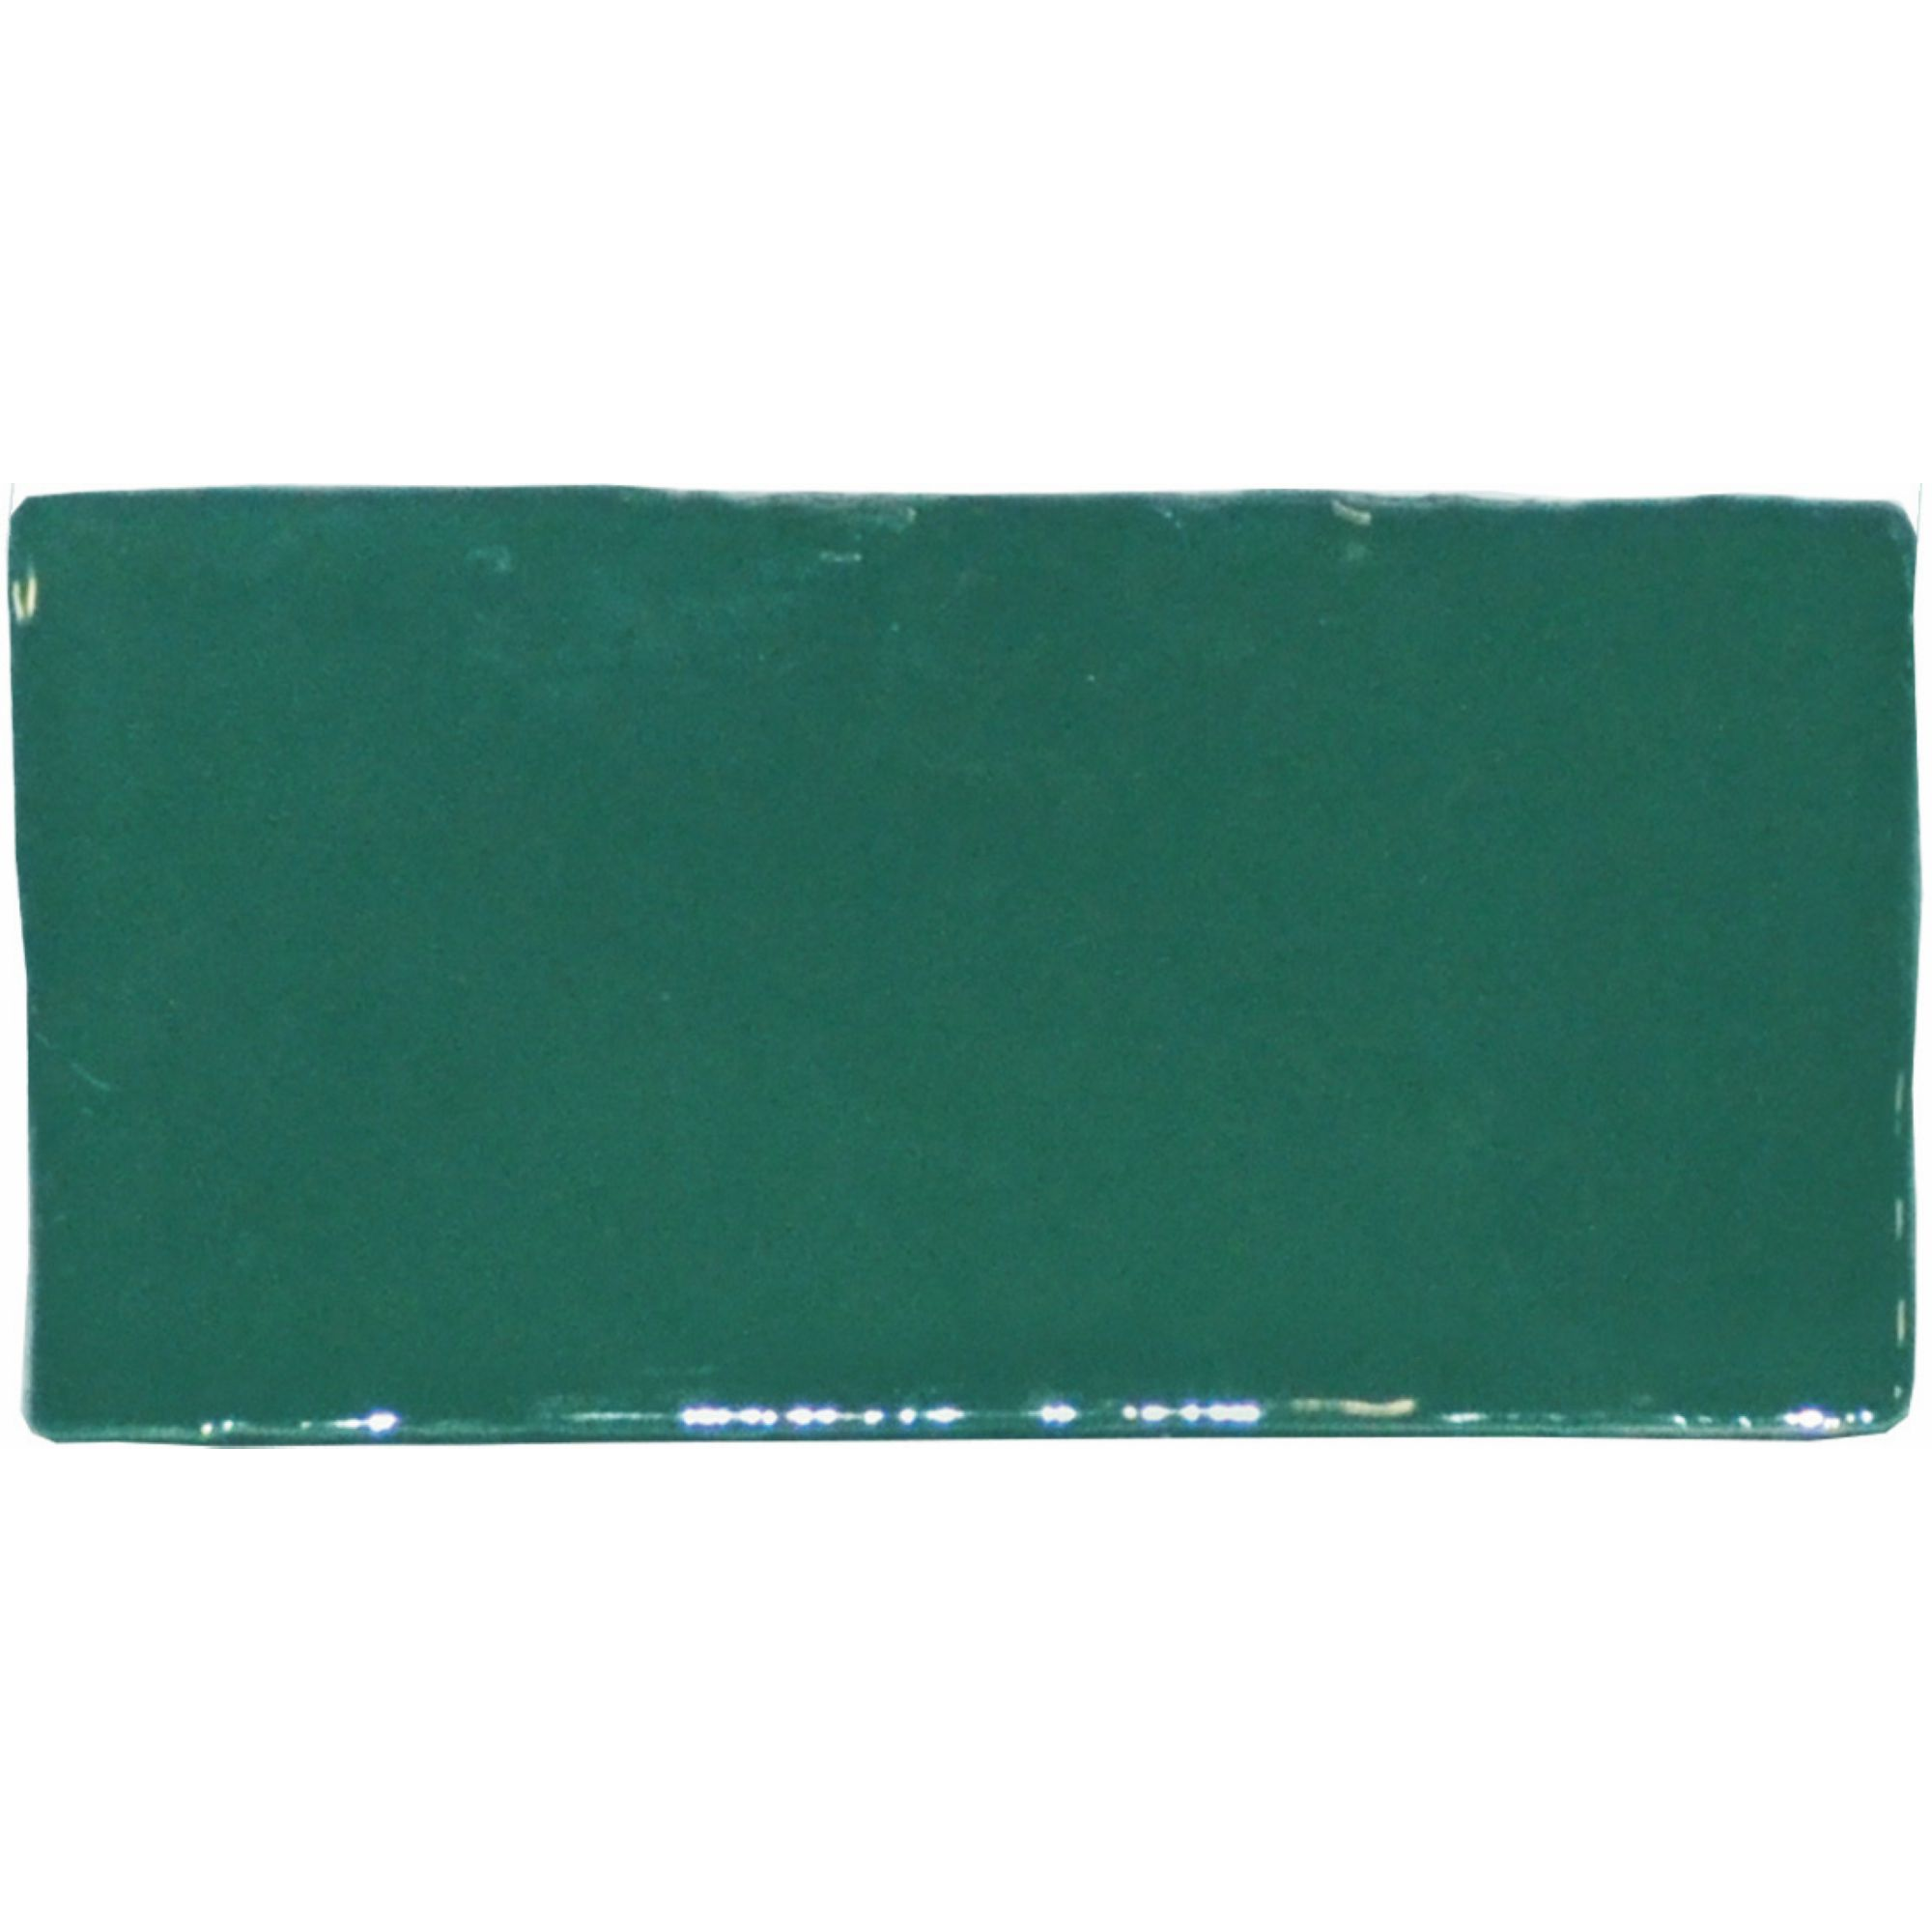 Wandfliese 'Crayon' grün glänzend 6,5 x 13 cm + product picture